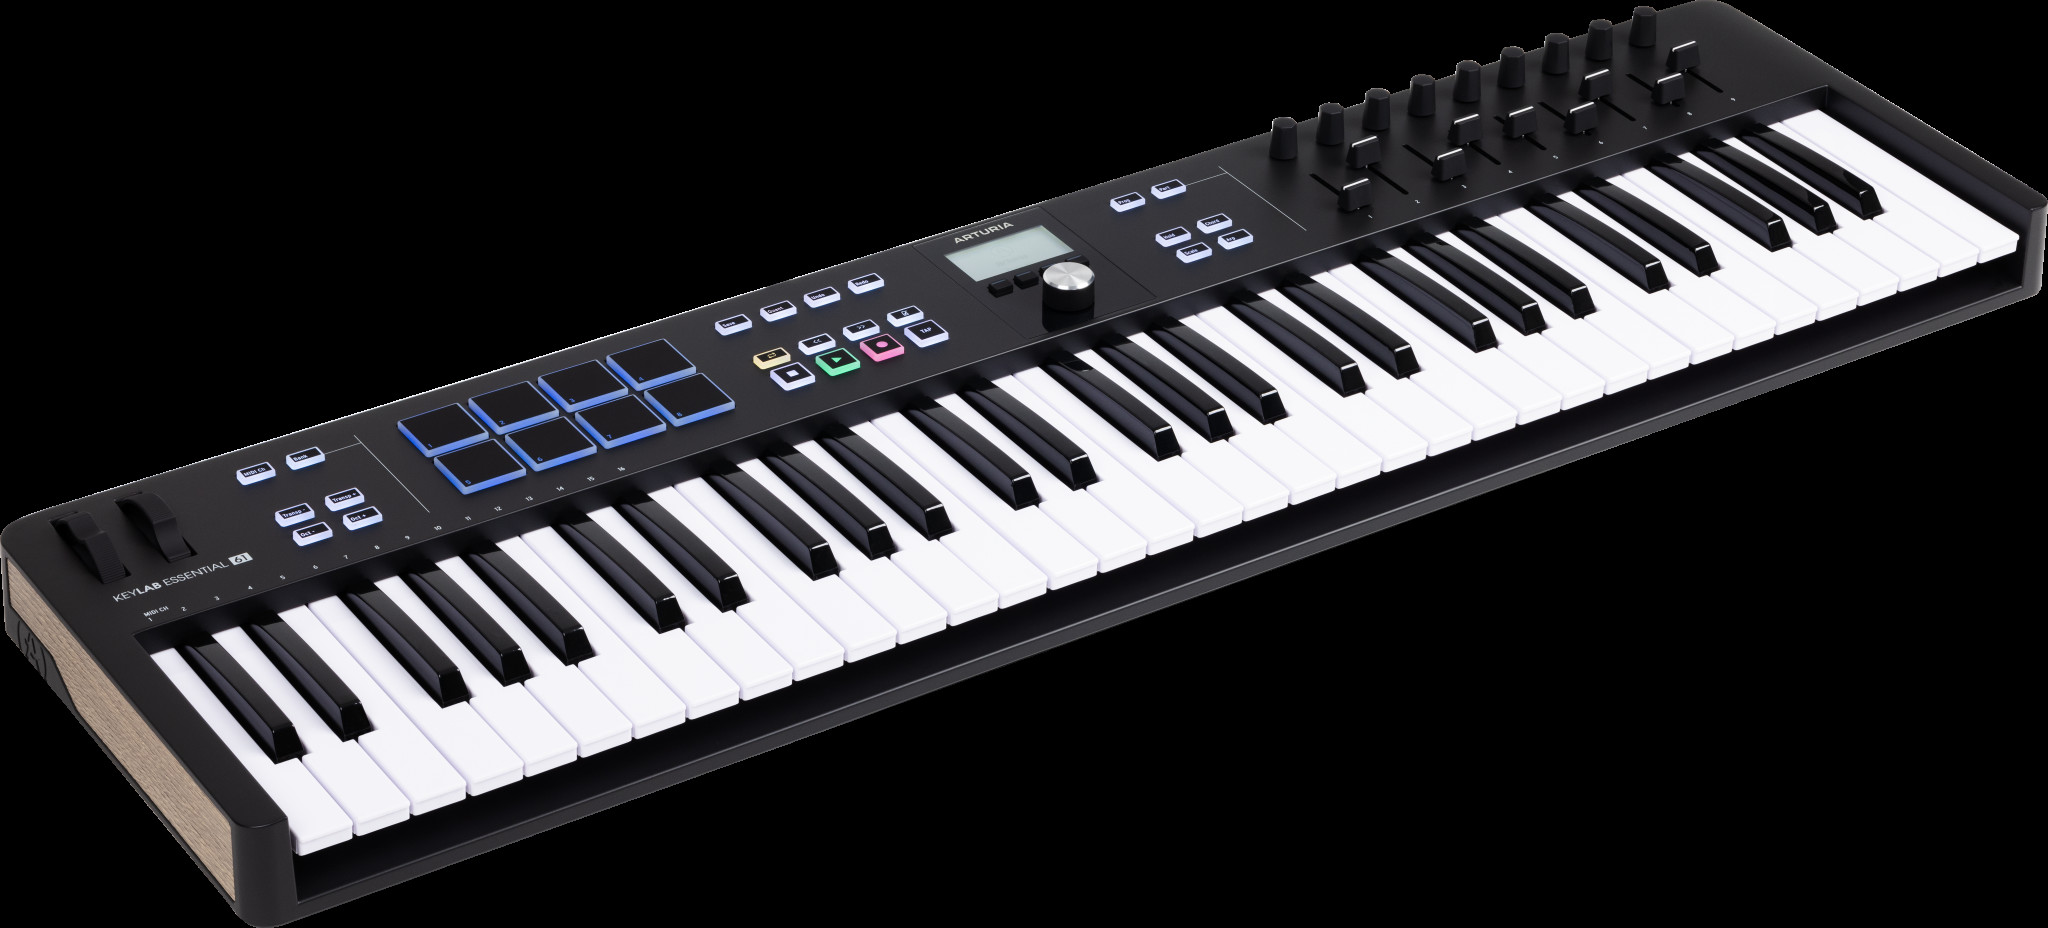 Keylab Essential MK3 by Arturia - MIDI Controller Keyboard